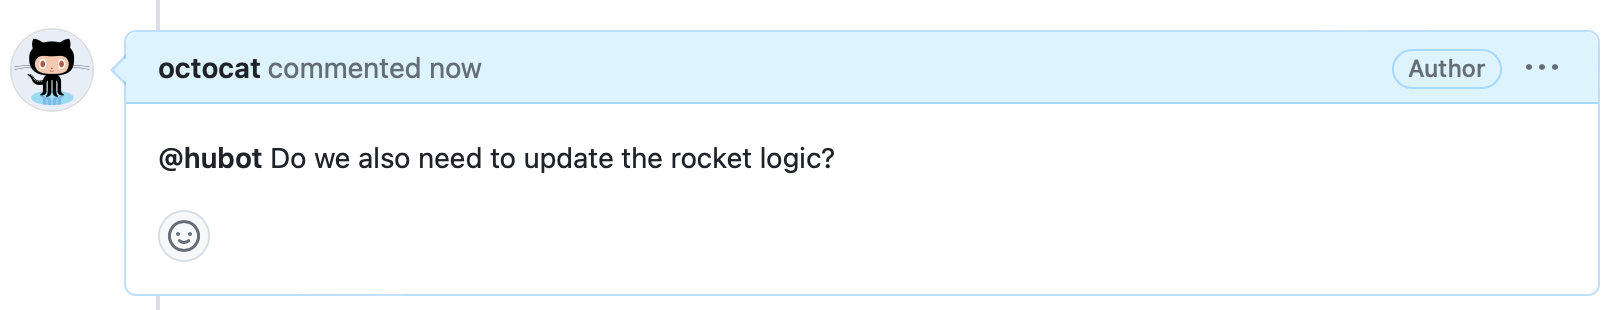 issue コメントのスクリーンショット。 ヘッダーには "octocat が今コメントしました" と表示され、本文には "@hubot ロケット ロジックも更新する必要がありますか?" と表示されています。